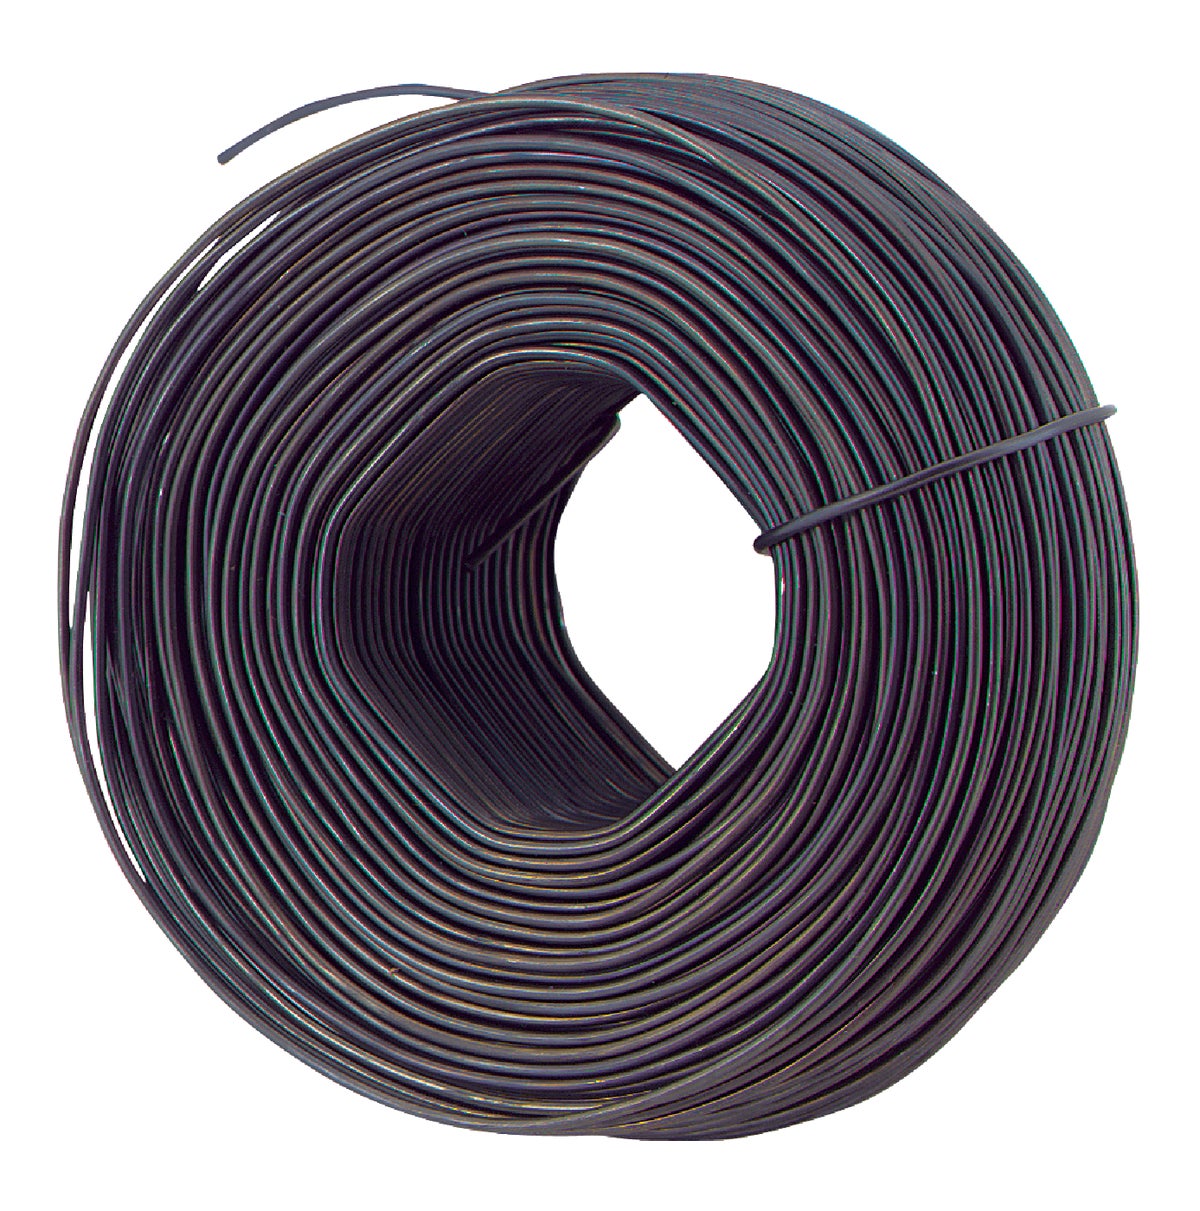 Buy Grip-Rite Tie Reel Rebar Wire Tool Metal